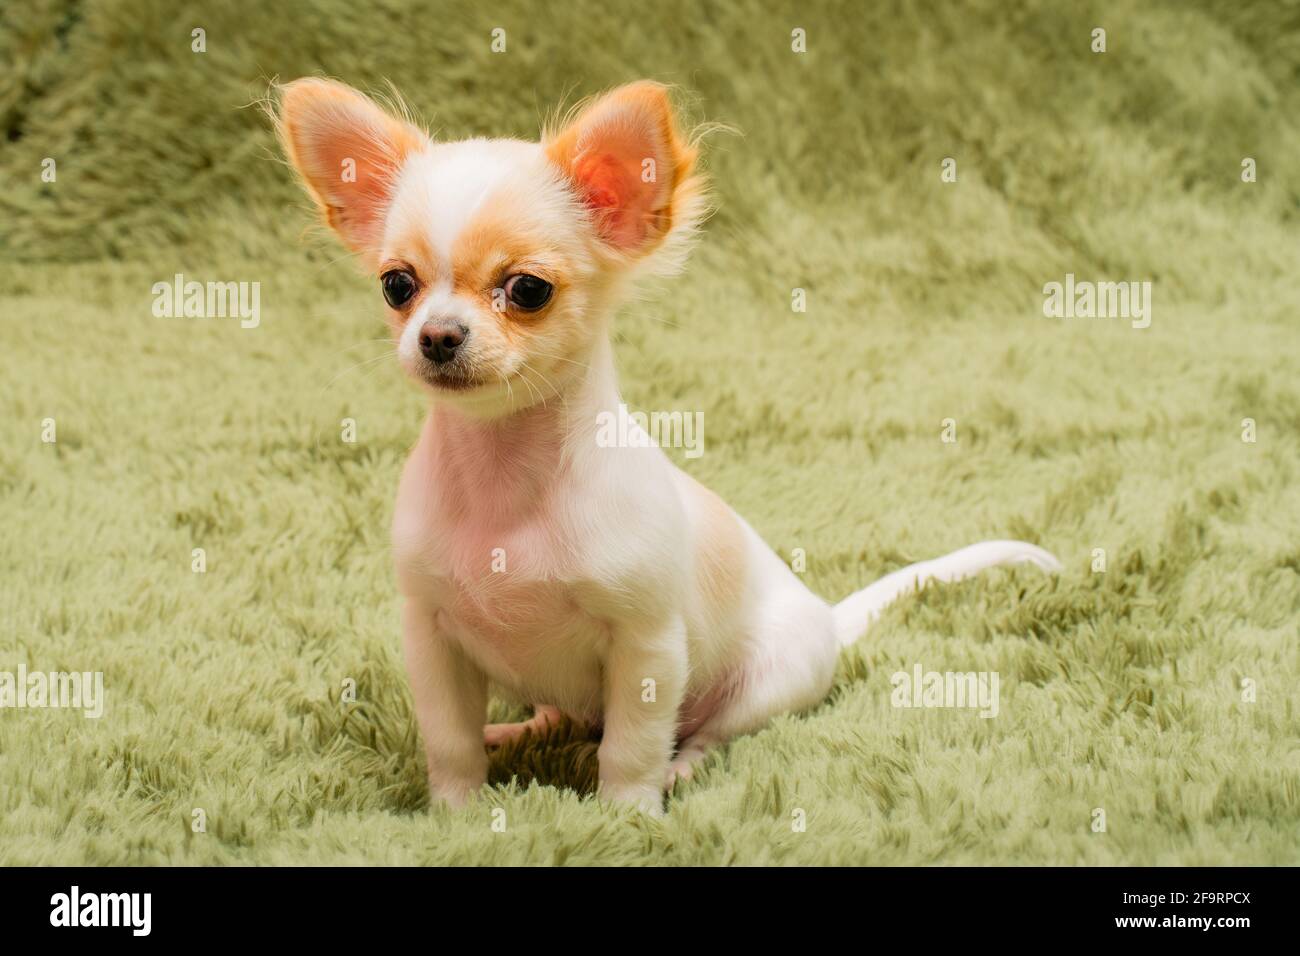 Cucciolo di Chihuahua su una coperta soffice. Bianco con macchie rosse chihuahua cane a casa. Concetto di animali domestici. Foto Stock